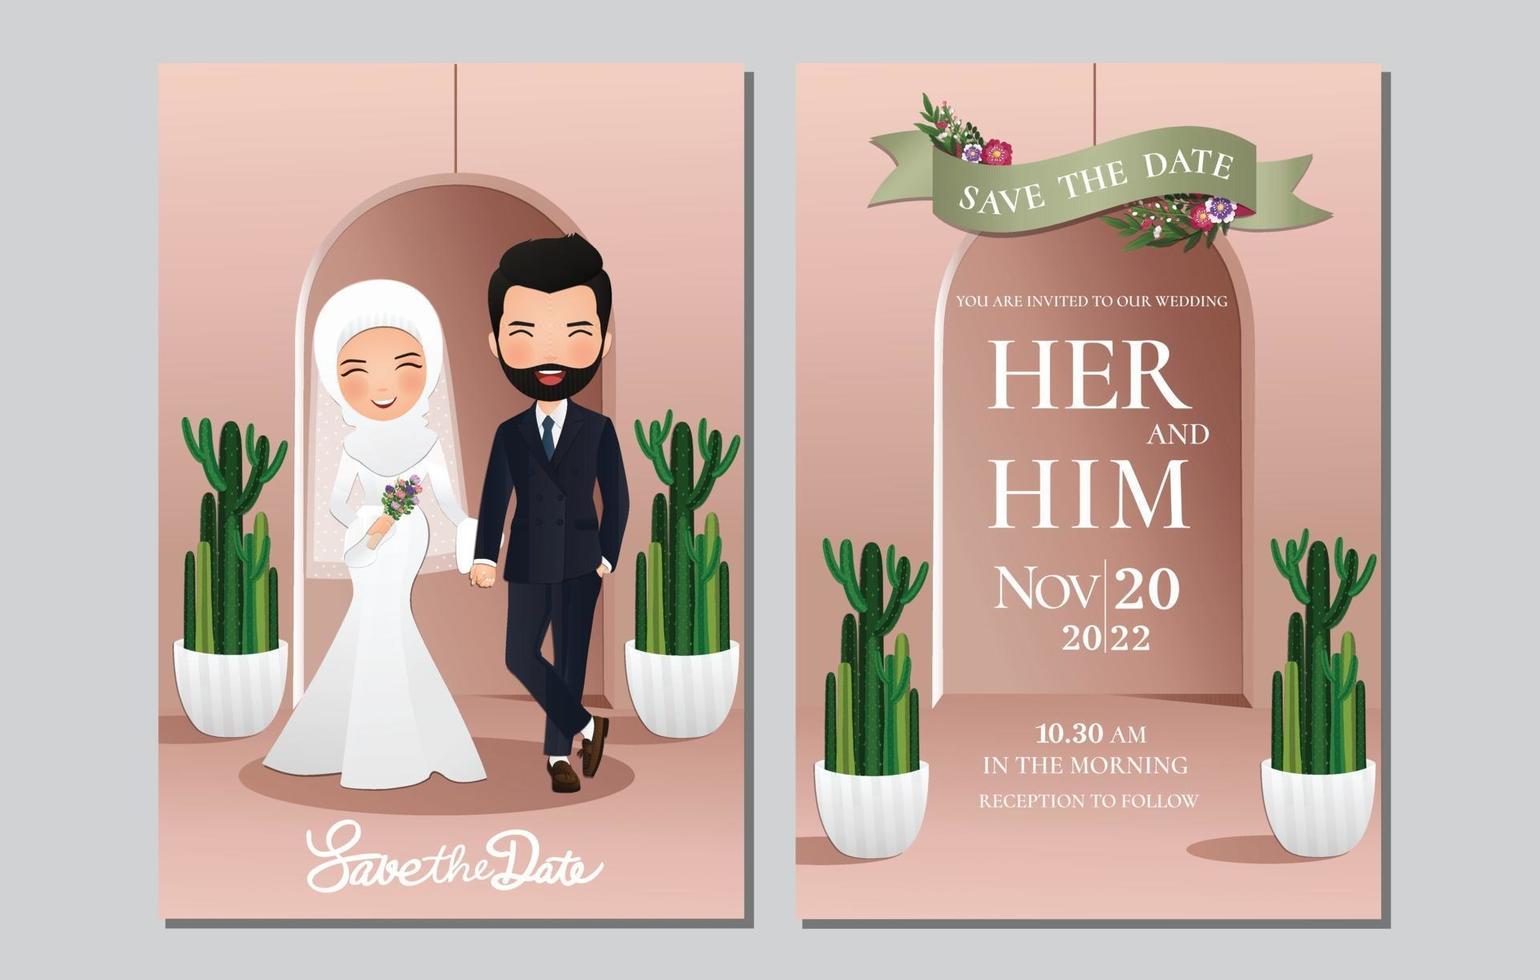 Tarjeta de invitación de boda la novia y el novio linda pareja musulmana personaje de dibujos animados con cactus verde y fondo rosa claro ilustración vectorial. vector